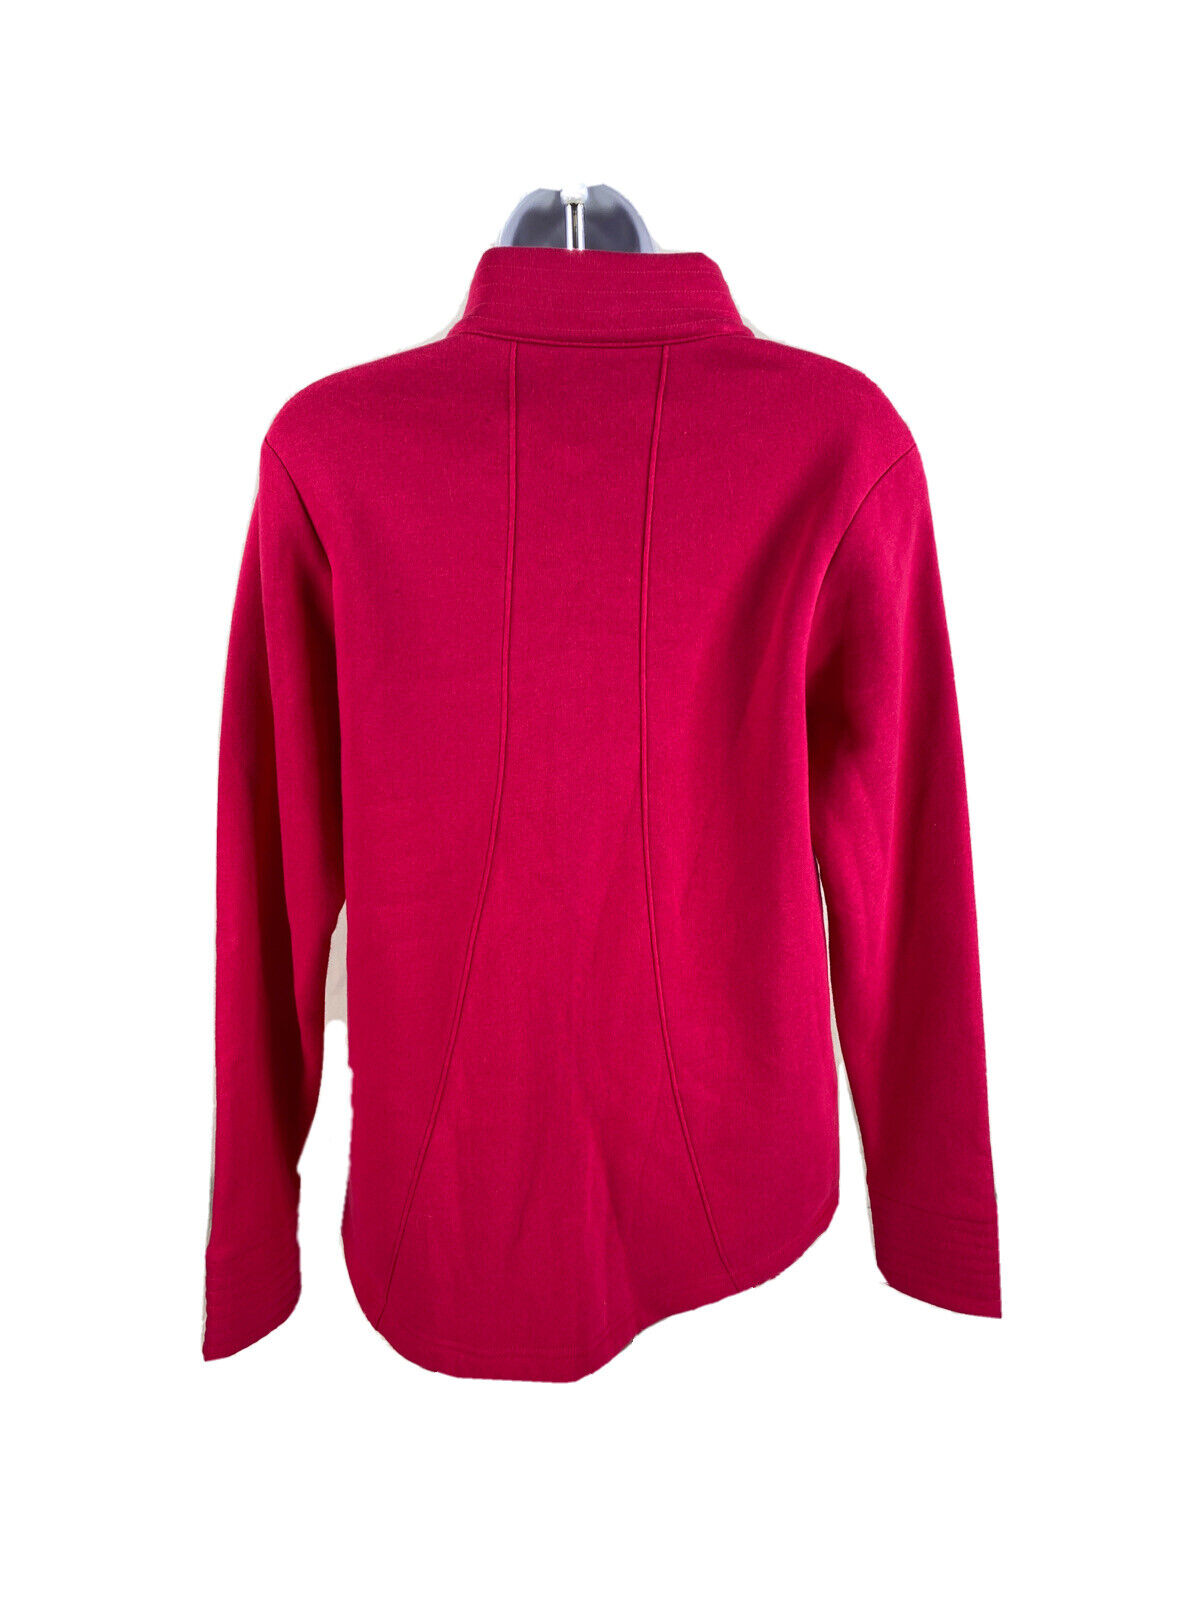 NEW Gear Women's Pink Full ZIp Midshipmen US Naval Academy Sweatshirt - M